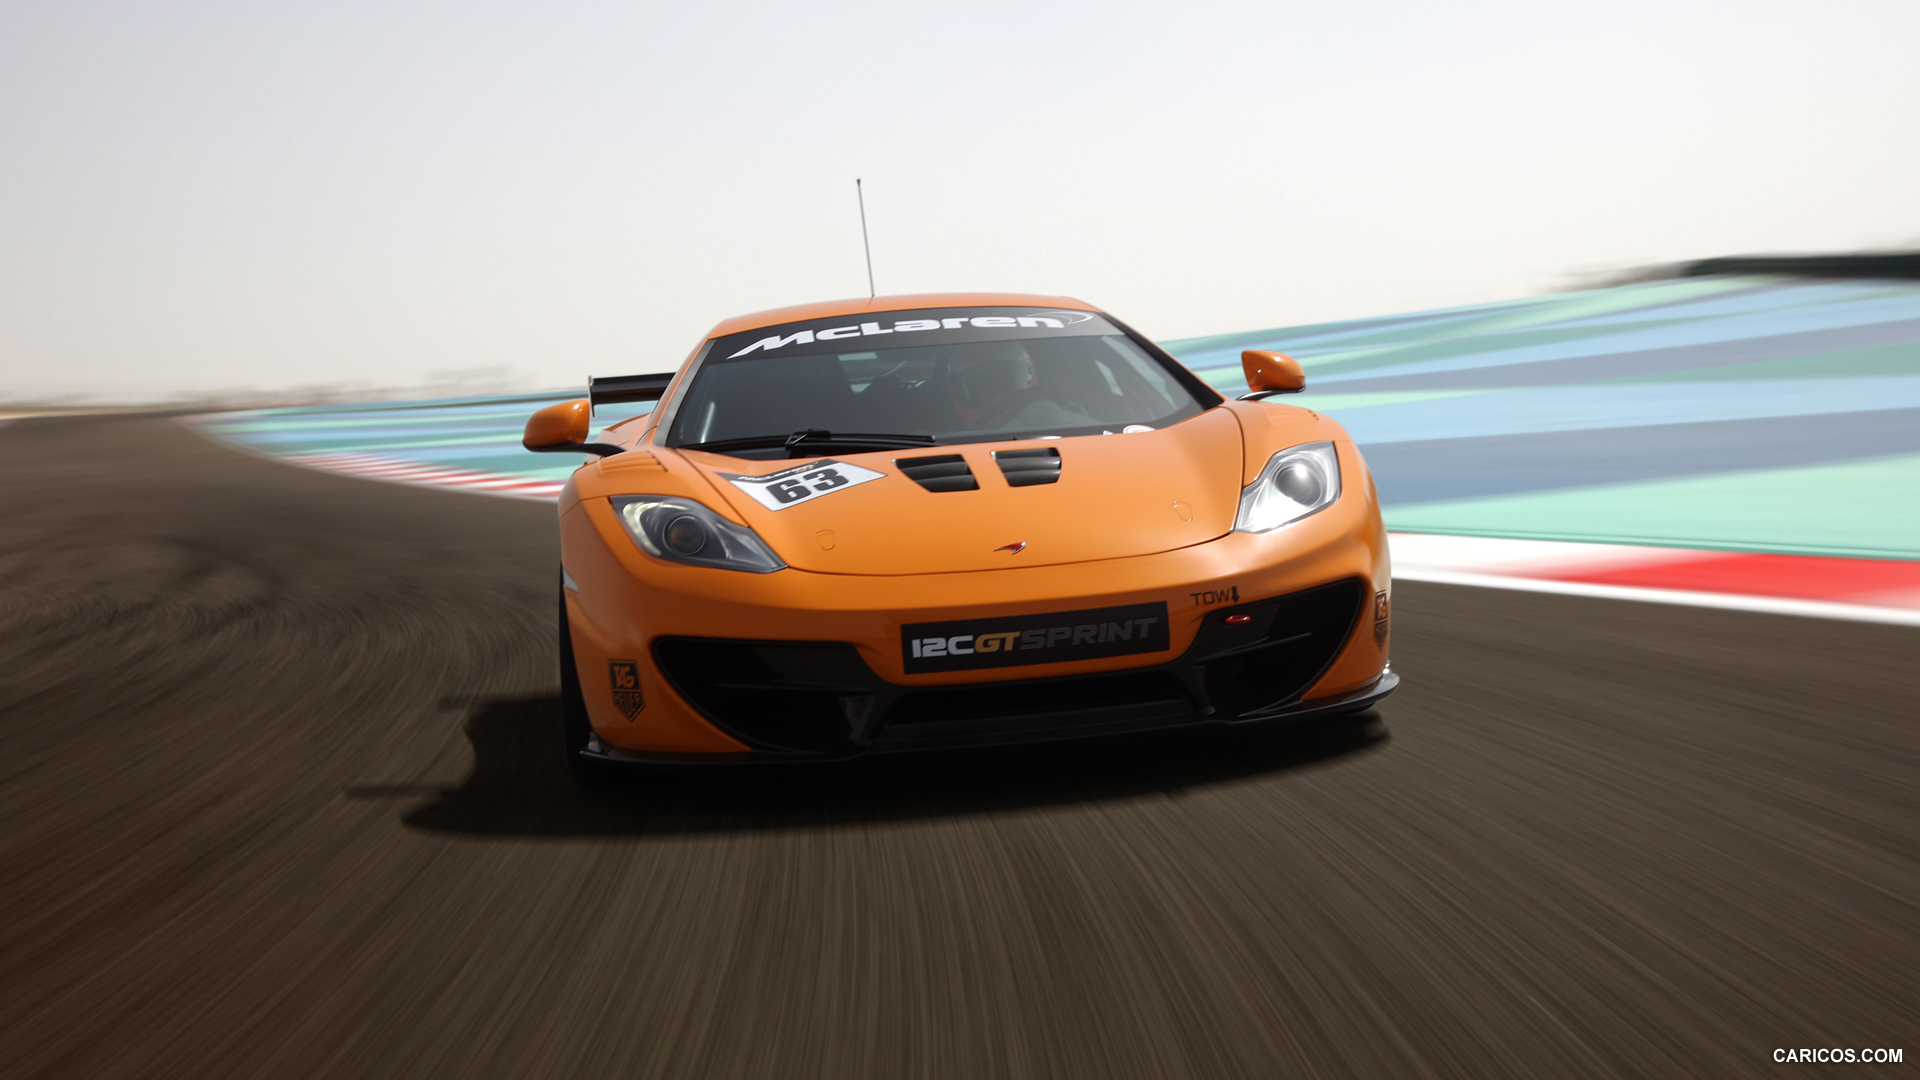 2014 McLaren 12C GT Sprint  - Front, #4 of 9